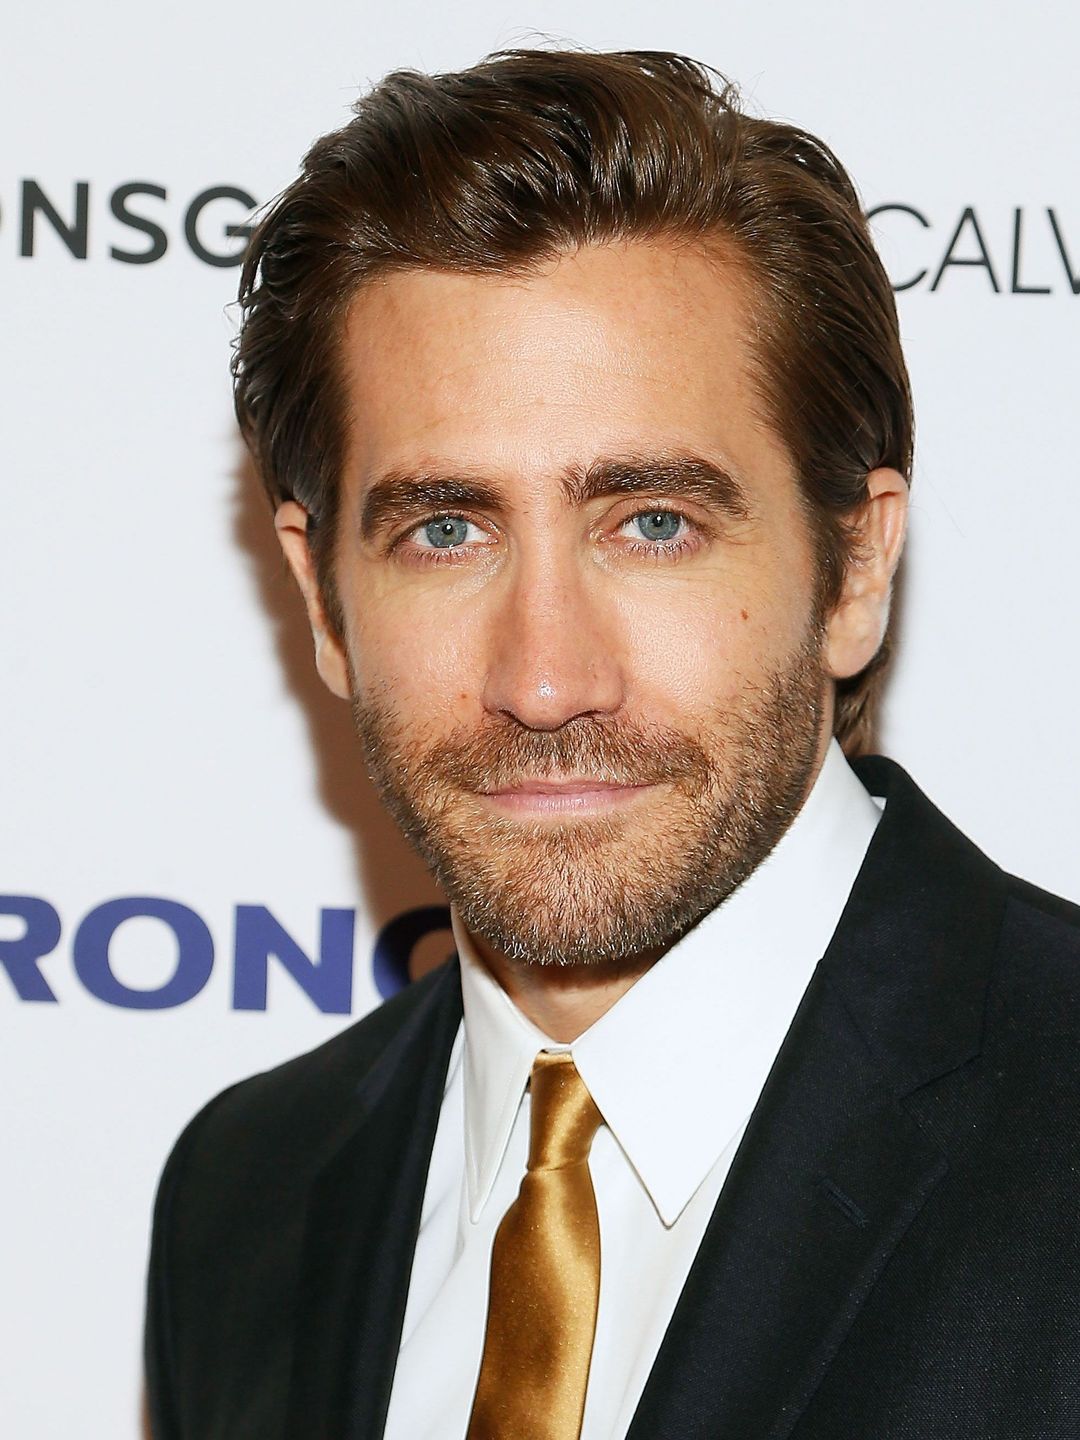 Jake Gyllenhaal young age